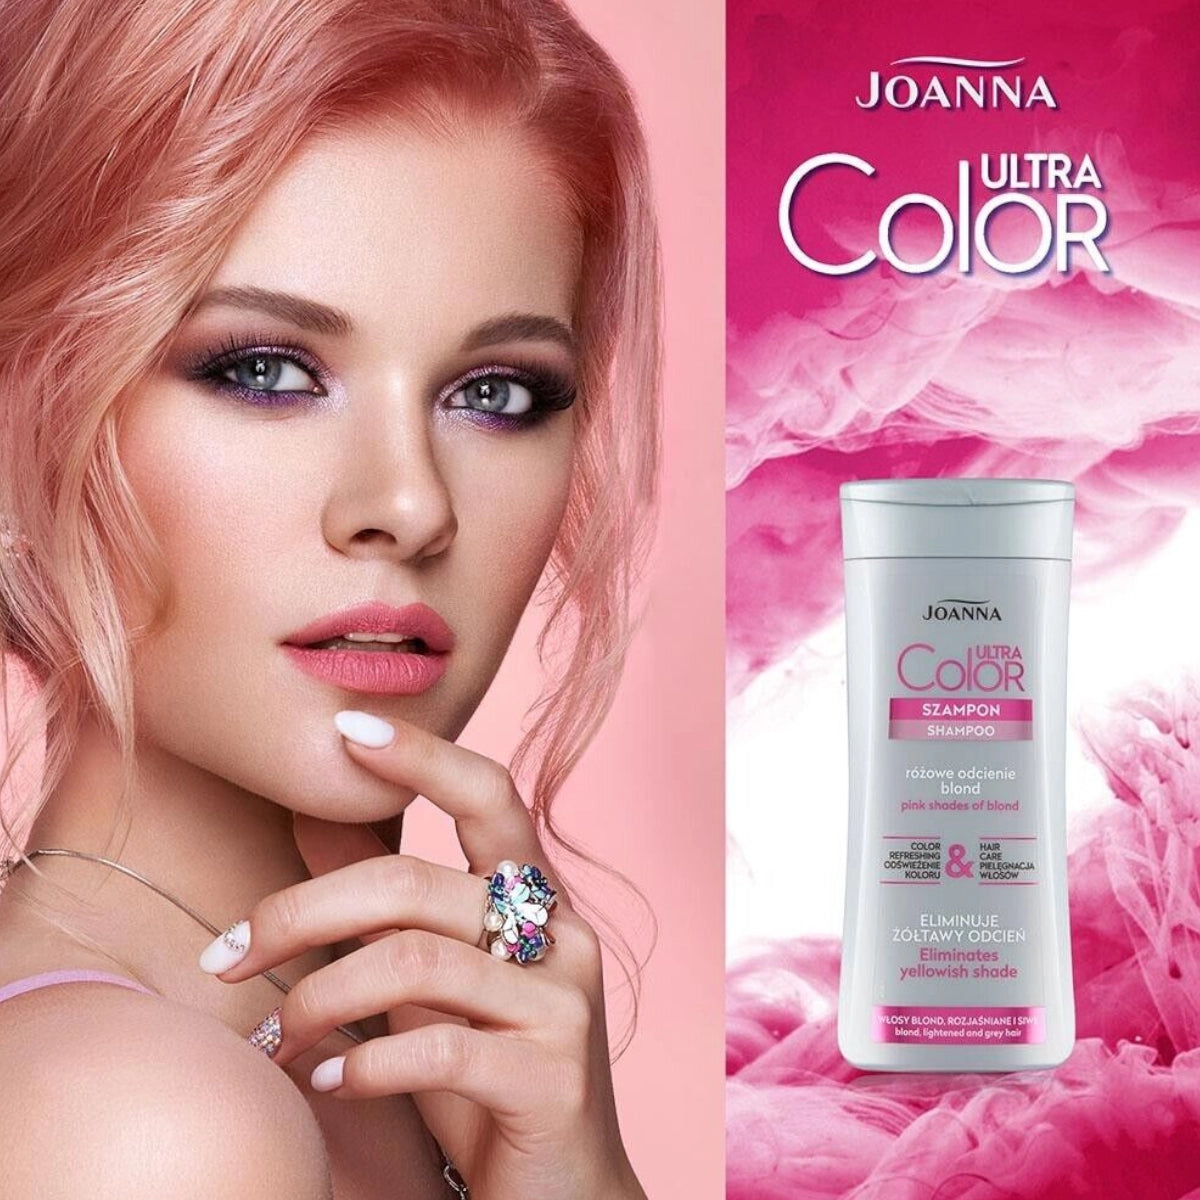 szampon rozowy joanna efekty